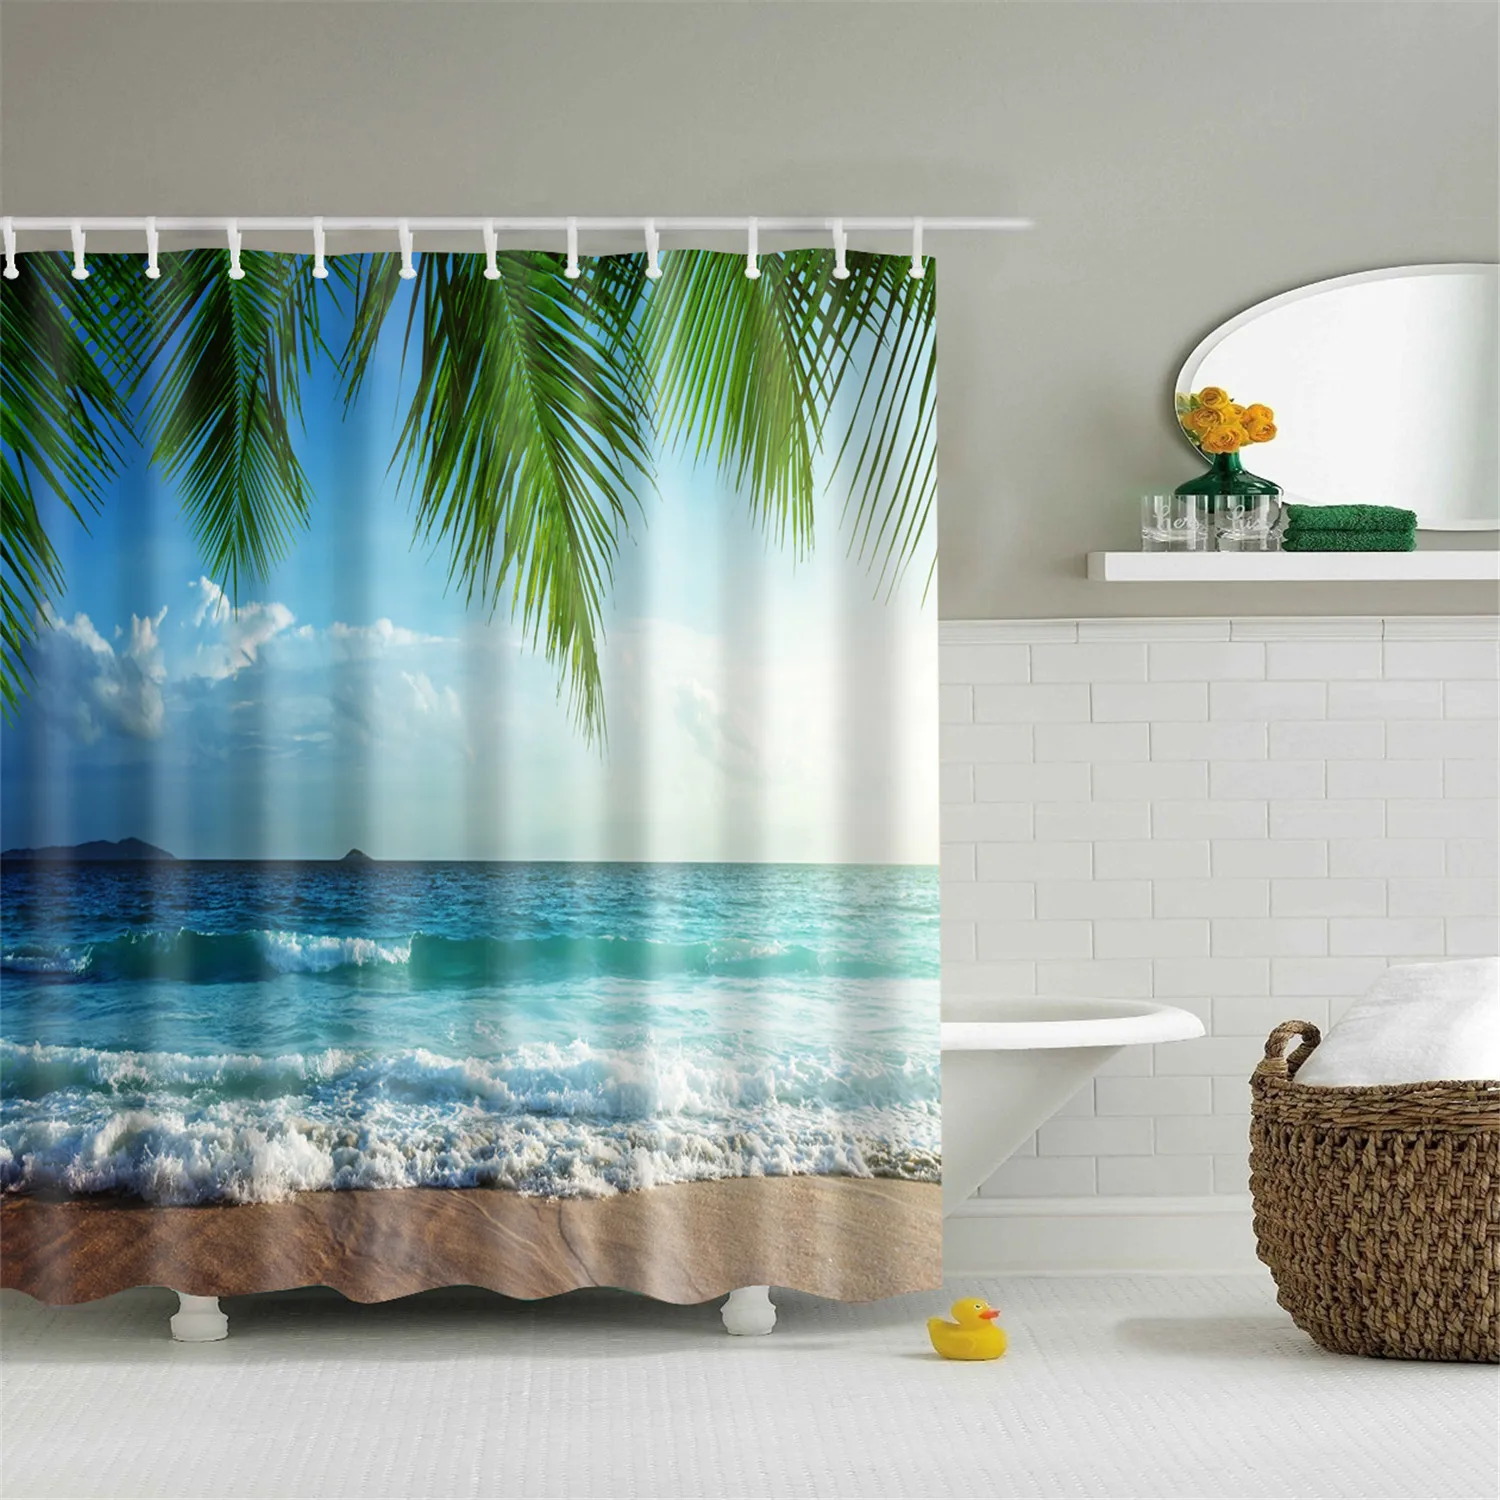 Seashell пляжная Ванна занавес 180x200 см Большая водонепроницаемая полиэфирная занавеска для душа 3D затемненная шторка для ванной занавеска